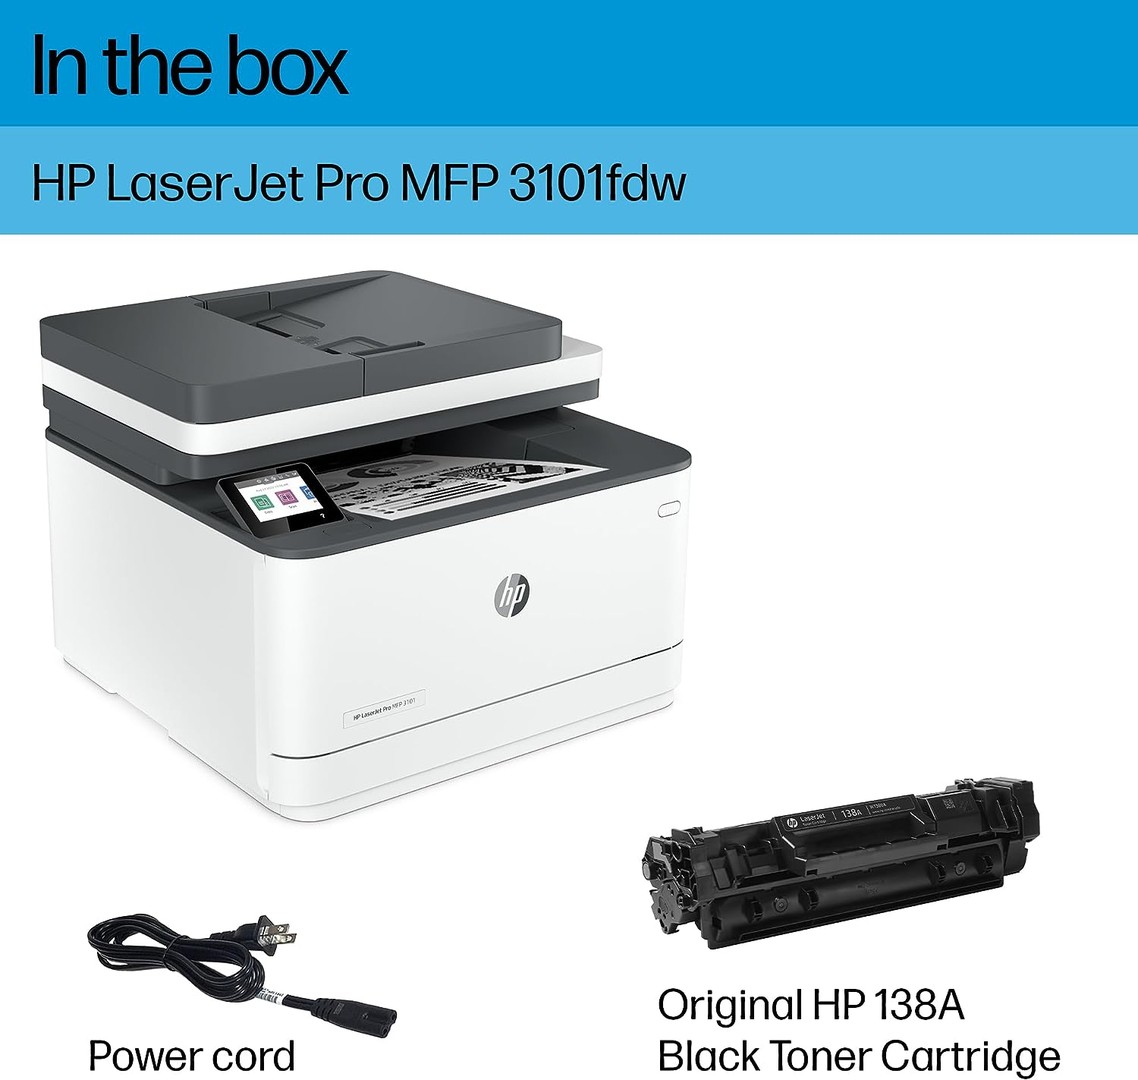 impresoras y scanners - HP Laserjet Pro MFP 3101fdw Impresora láser inalámbrica todo en 1 monocromática 5